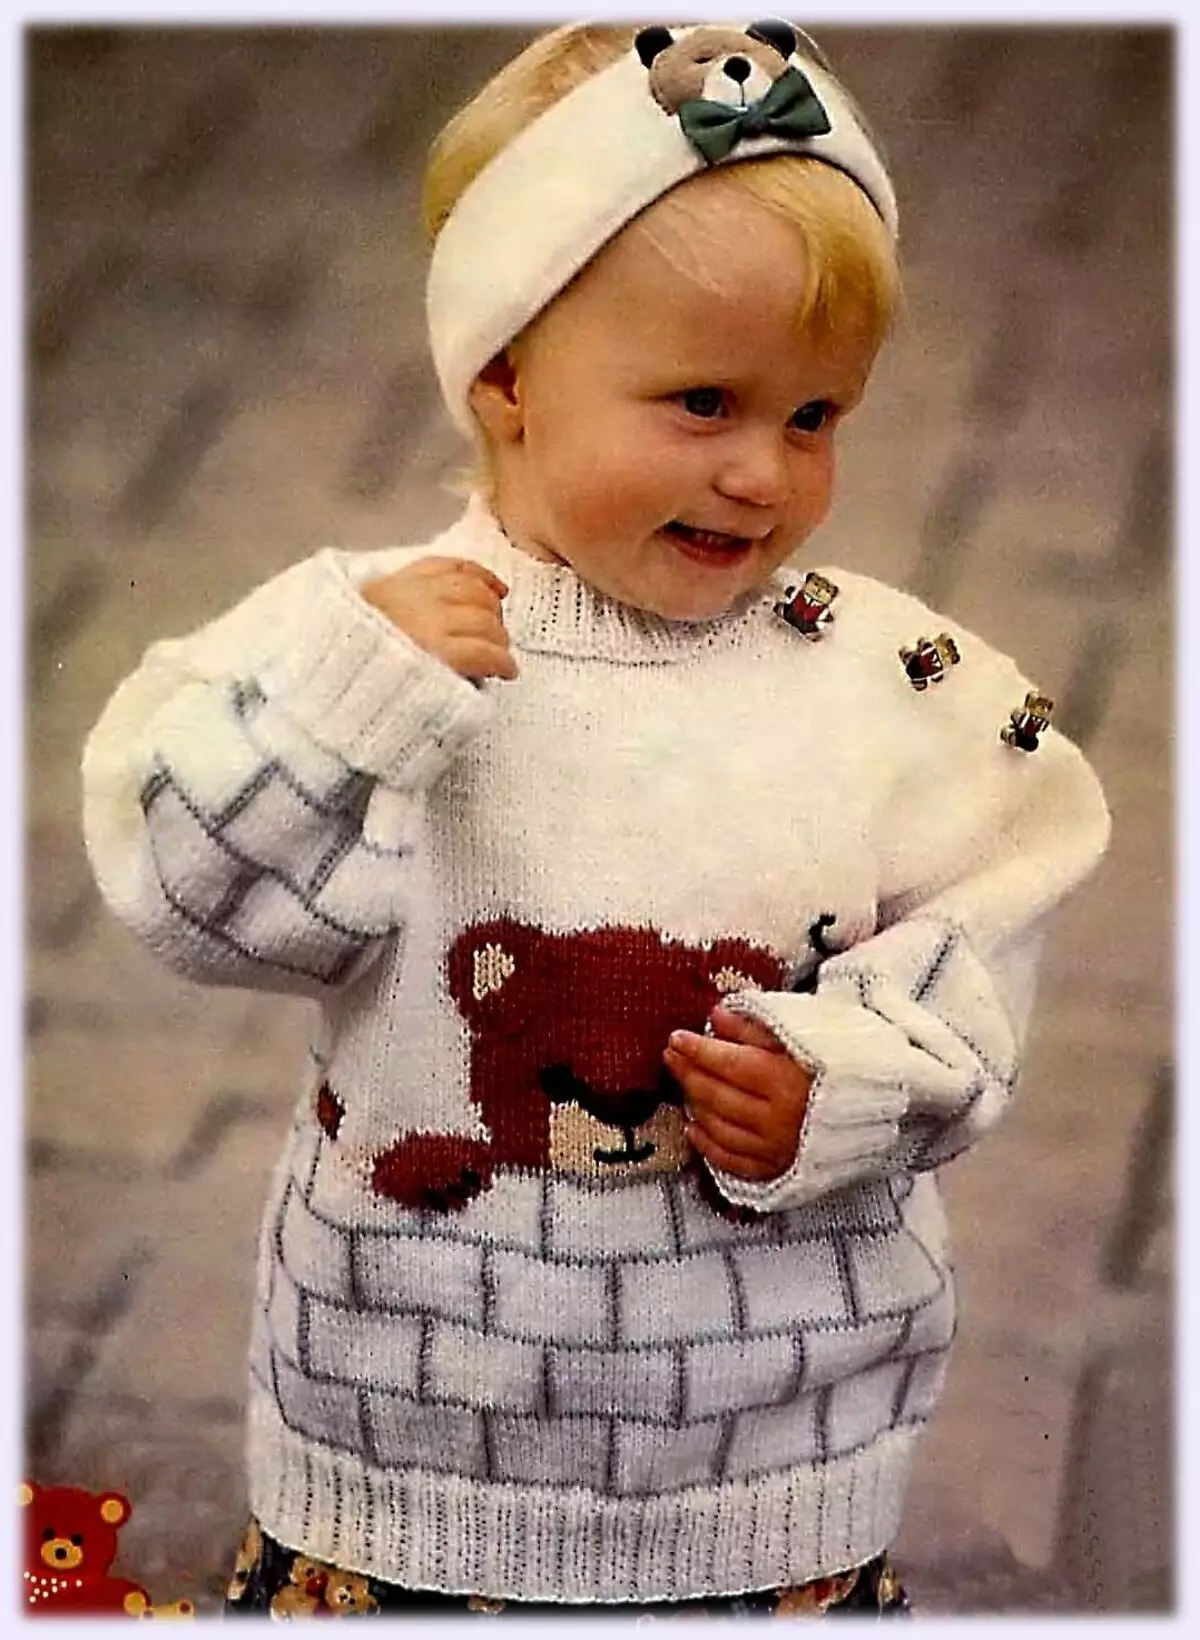 Pullover fir e Meedchen (111 Fotoen): Kanner woolen Modeller Raglan fir Meedercher bis zu 9 Joer a Jugendlecher, trendy ënner der Schoul 13526_69